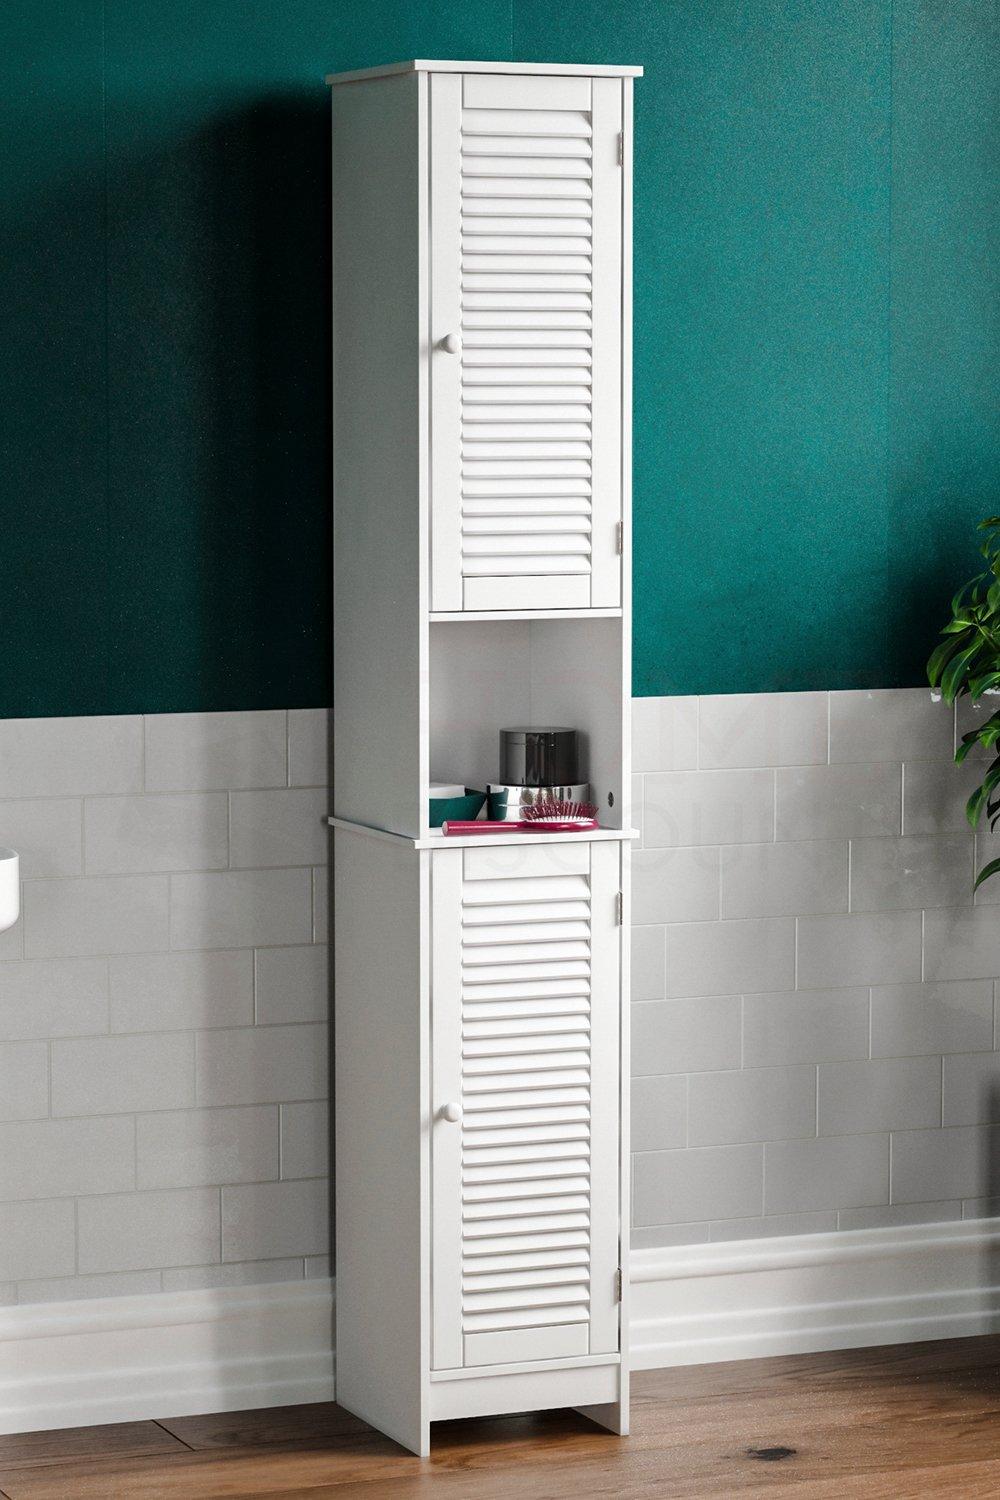 Bath Vida Liano 2 Door Tall Cabinet Storage Bathroom Furniture